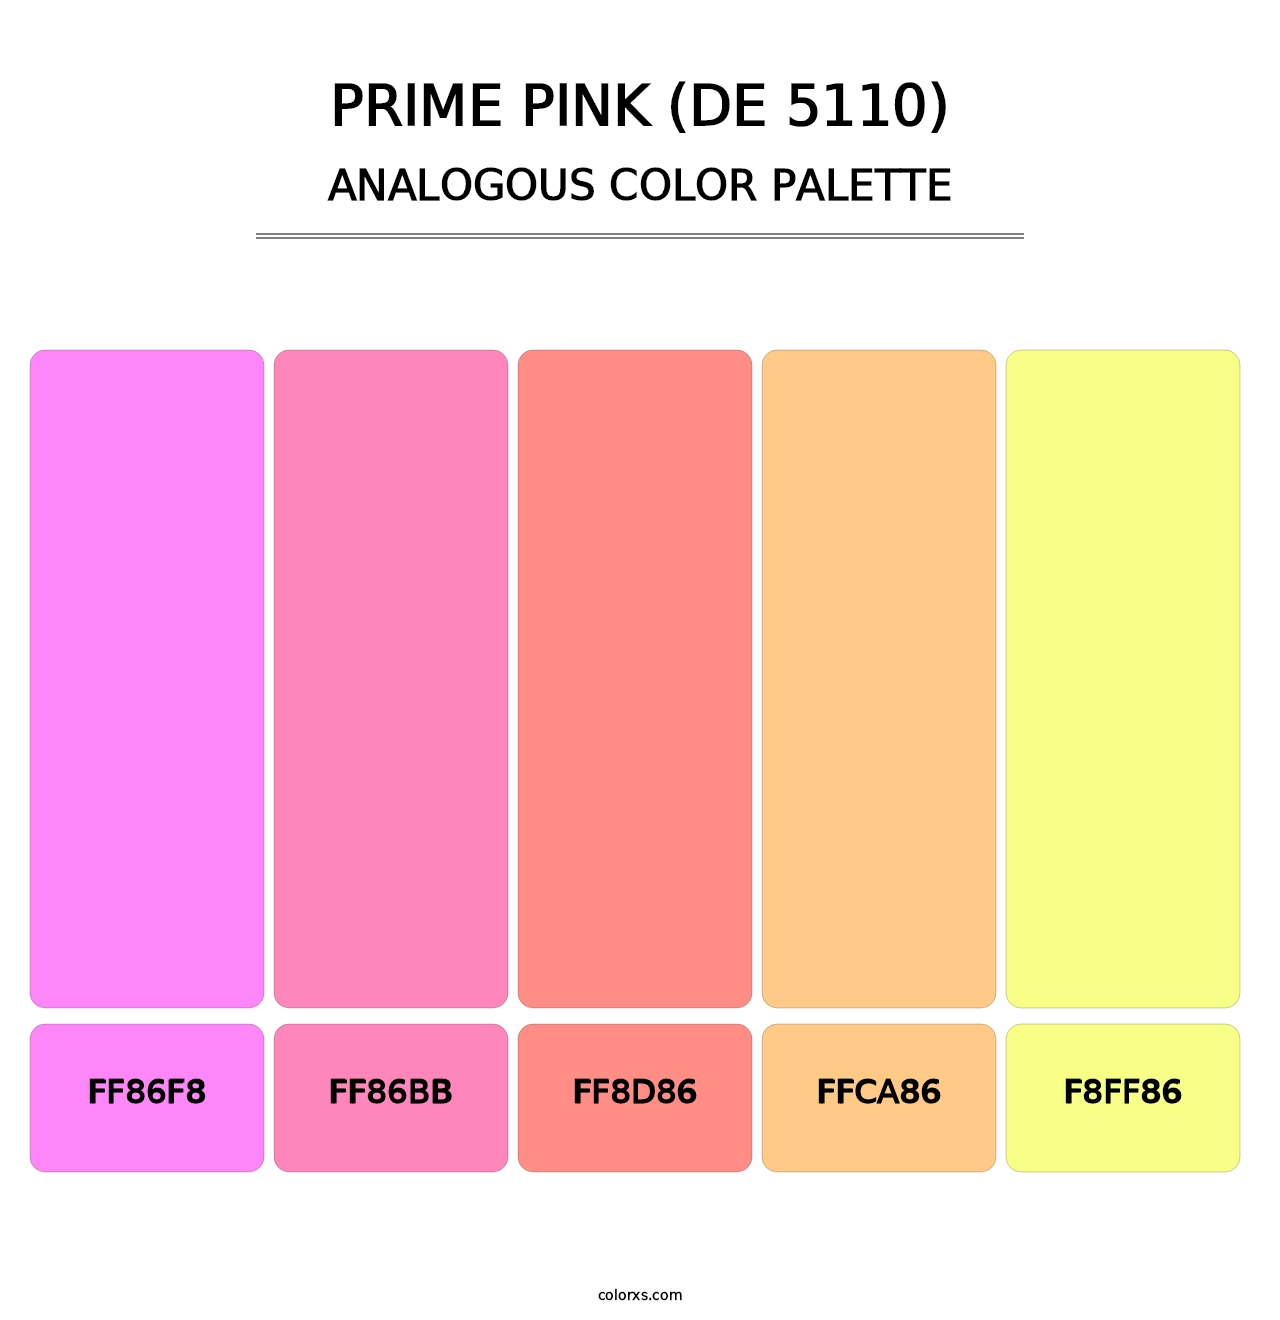 Prime Pink (DE 5110) - Analogous Color Palette